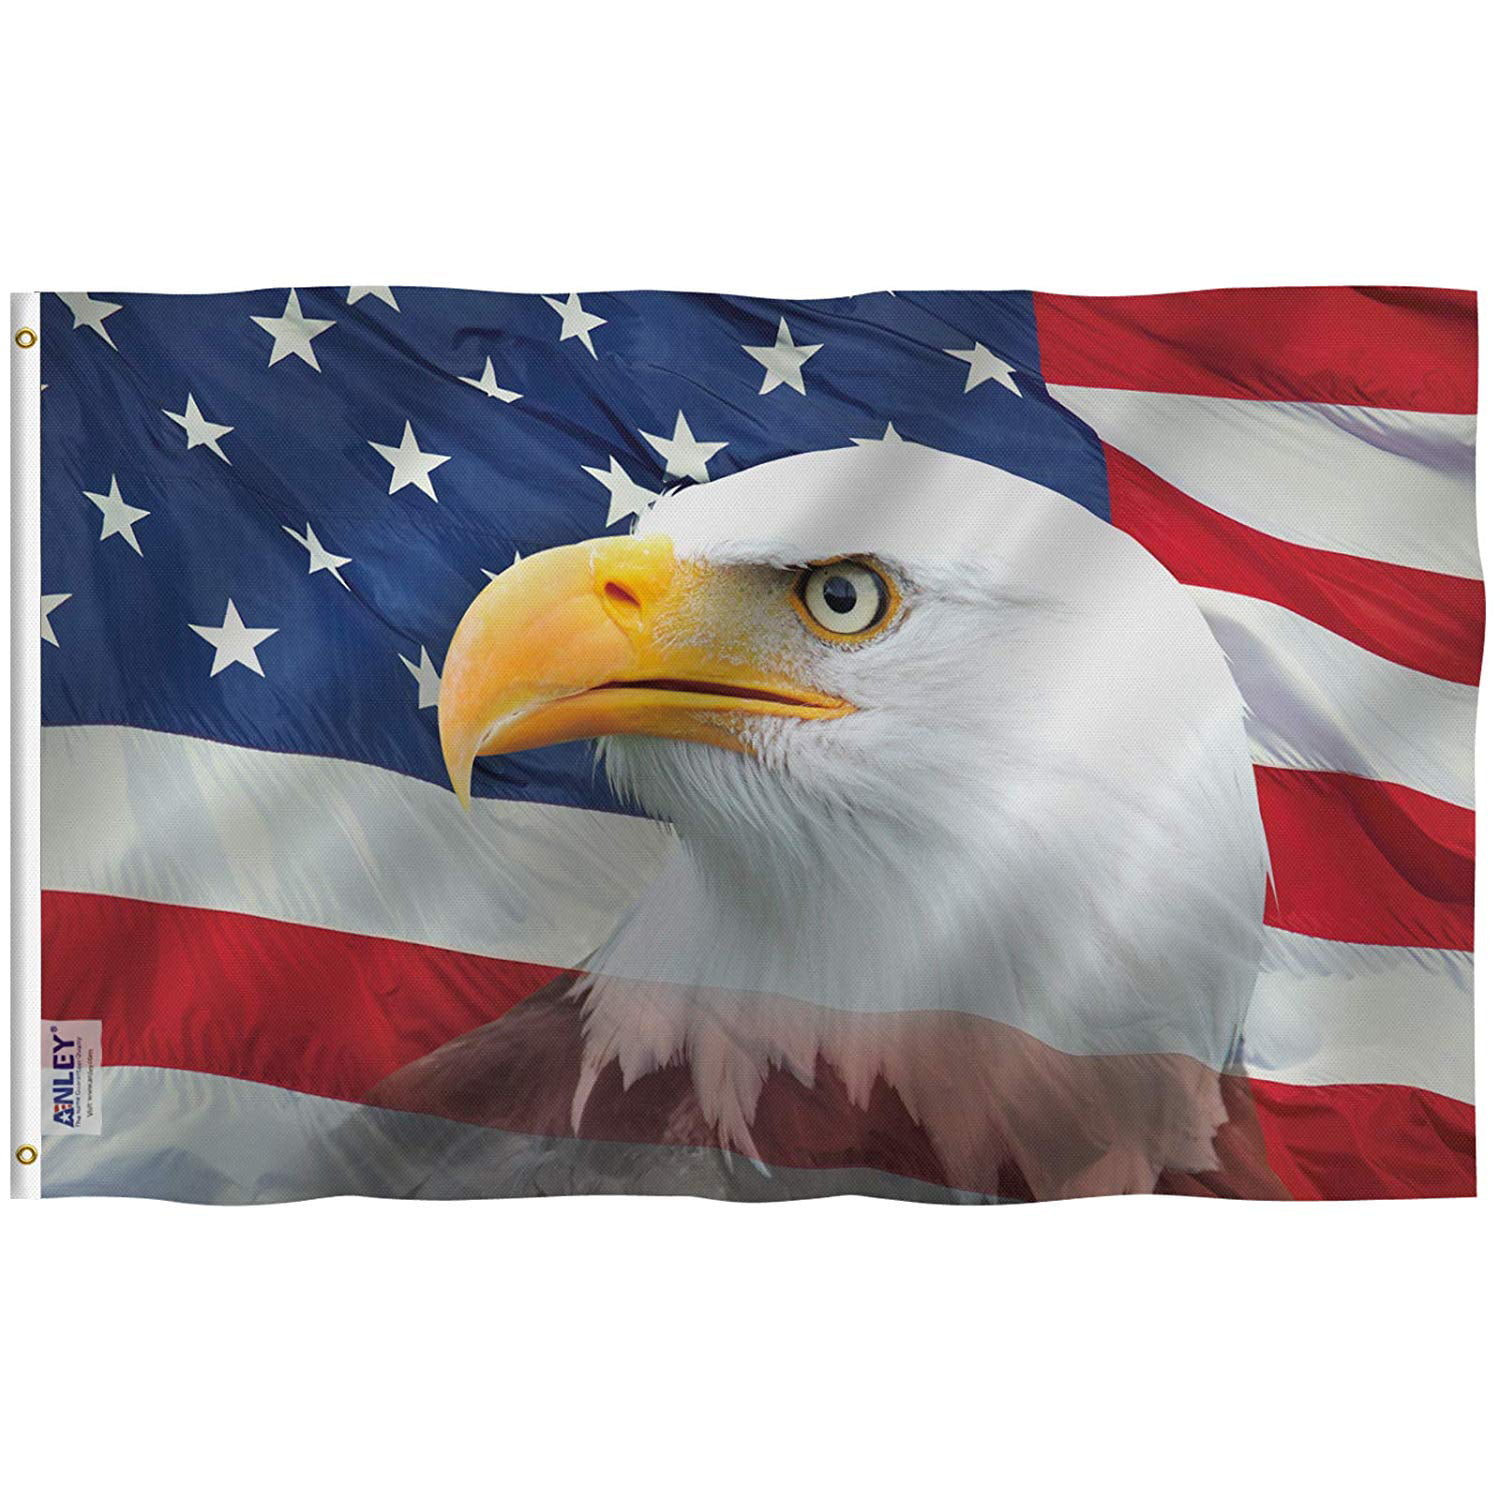 USA eagle flag  5ft x 3ft Americana retro 